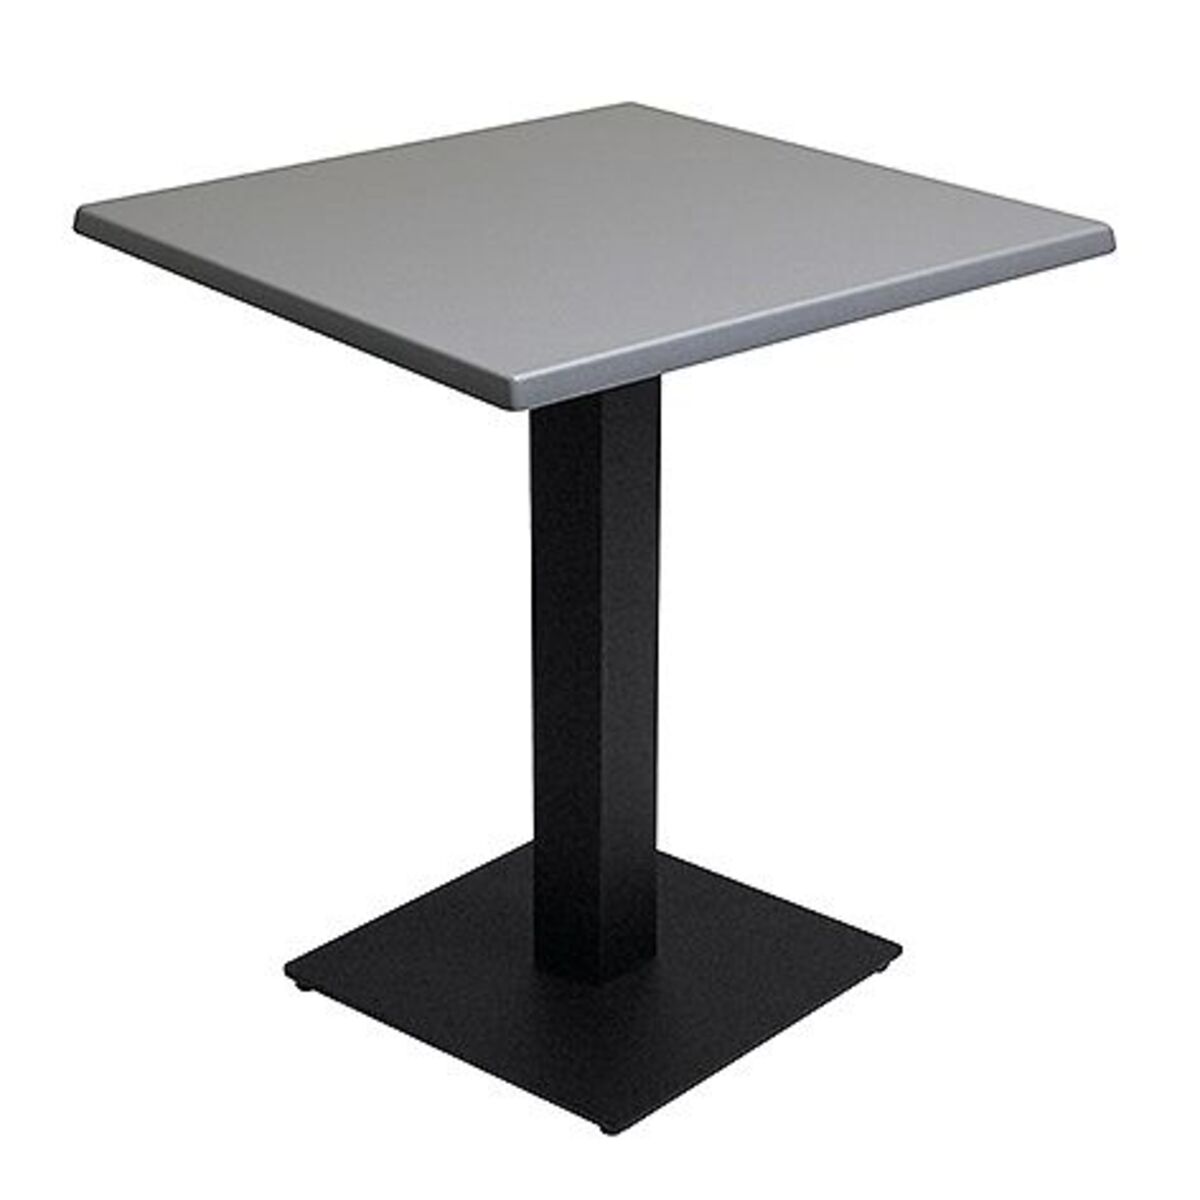 Table intérieure pied noir base carrée & plateau werzalit gris 60x60 cm